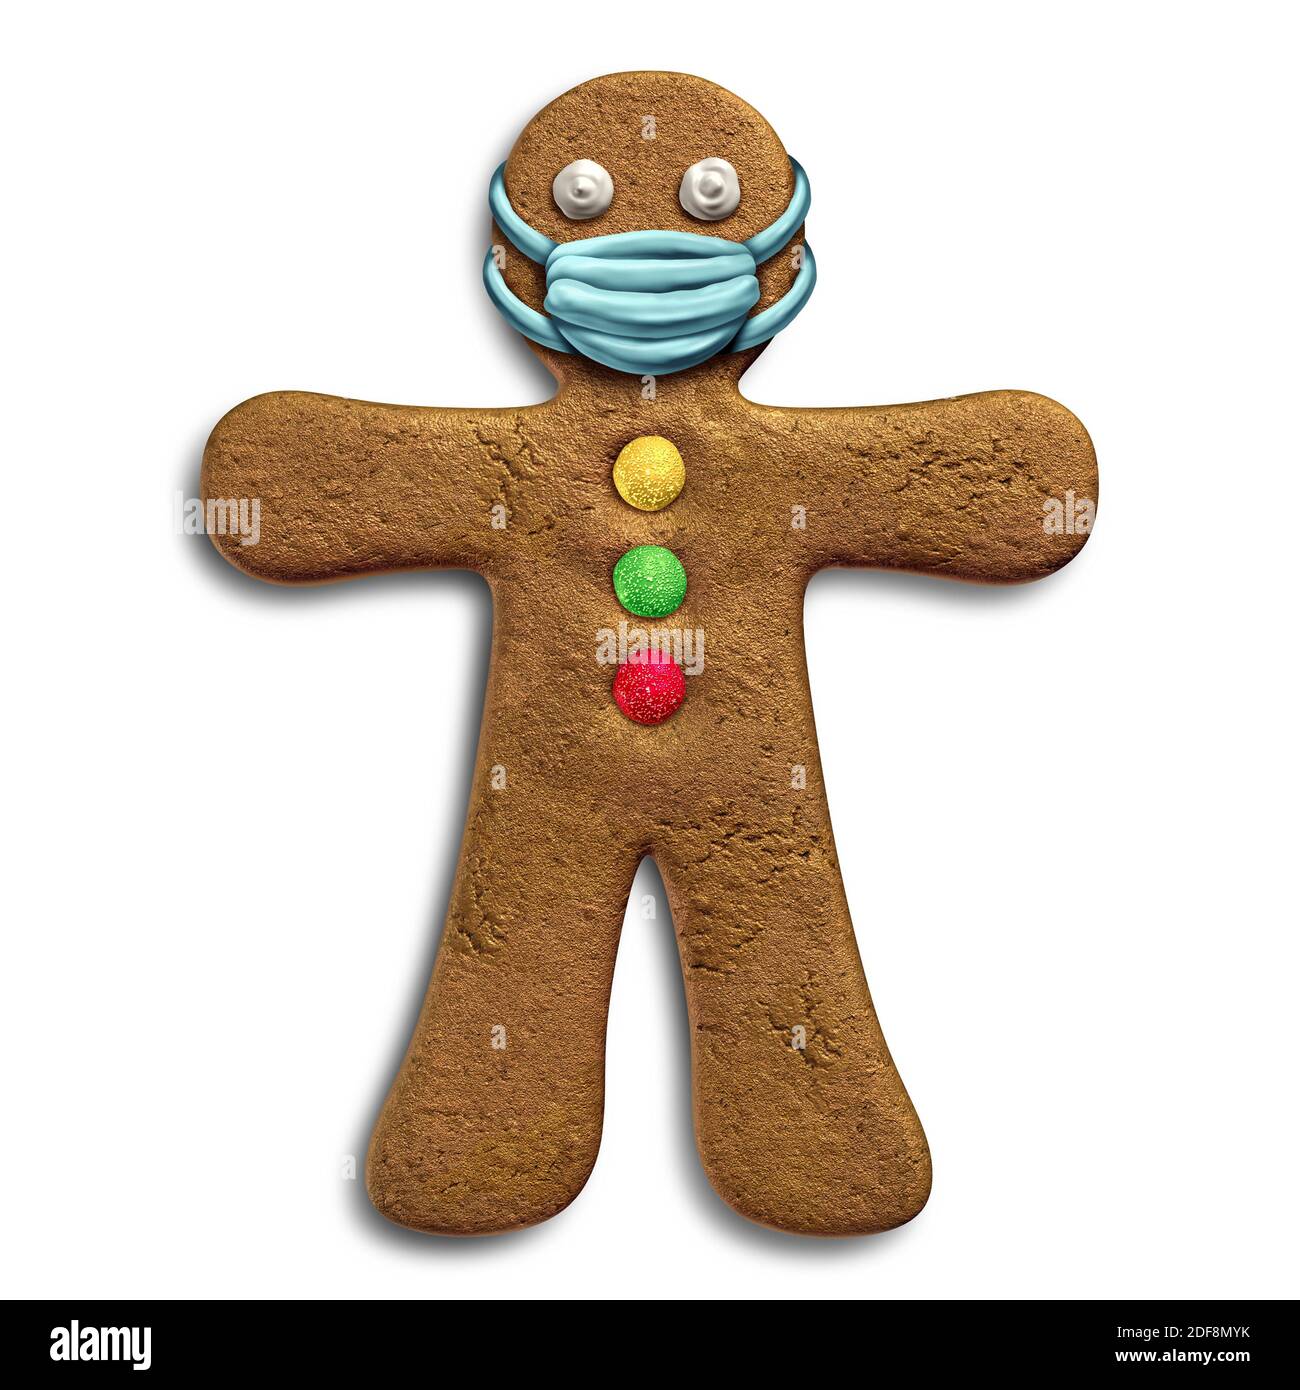 Lebkuchenmann mit einem Gesichtsmaske Konzept als Weihnachtszeit Symbol für Gesundheit und Gesundheit Krankheitsprävention und Prävention eines Virus. Stockfoto